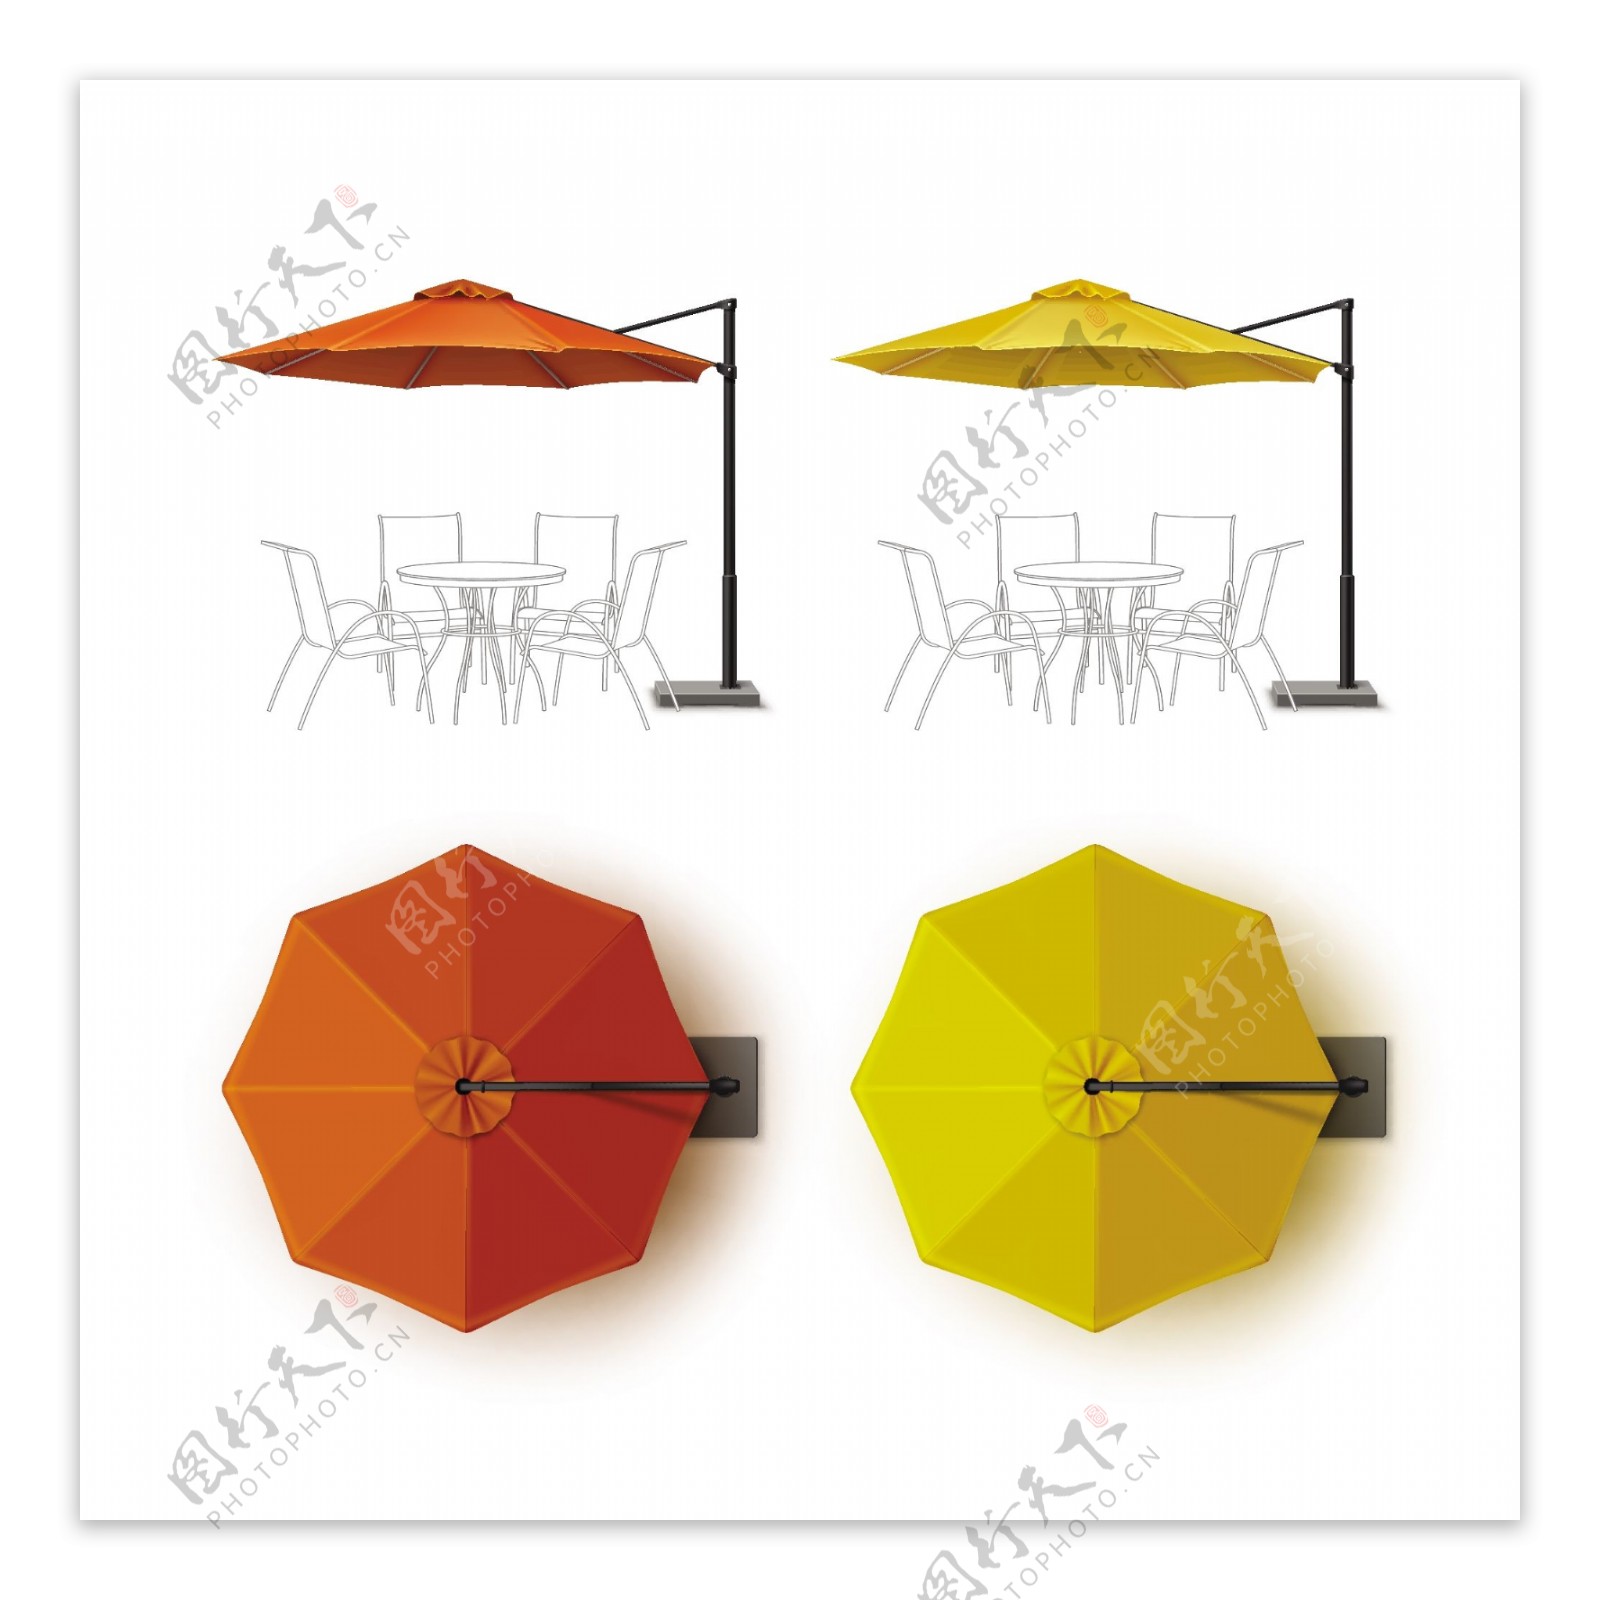 遮阳伞棚矢量设计素材